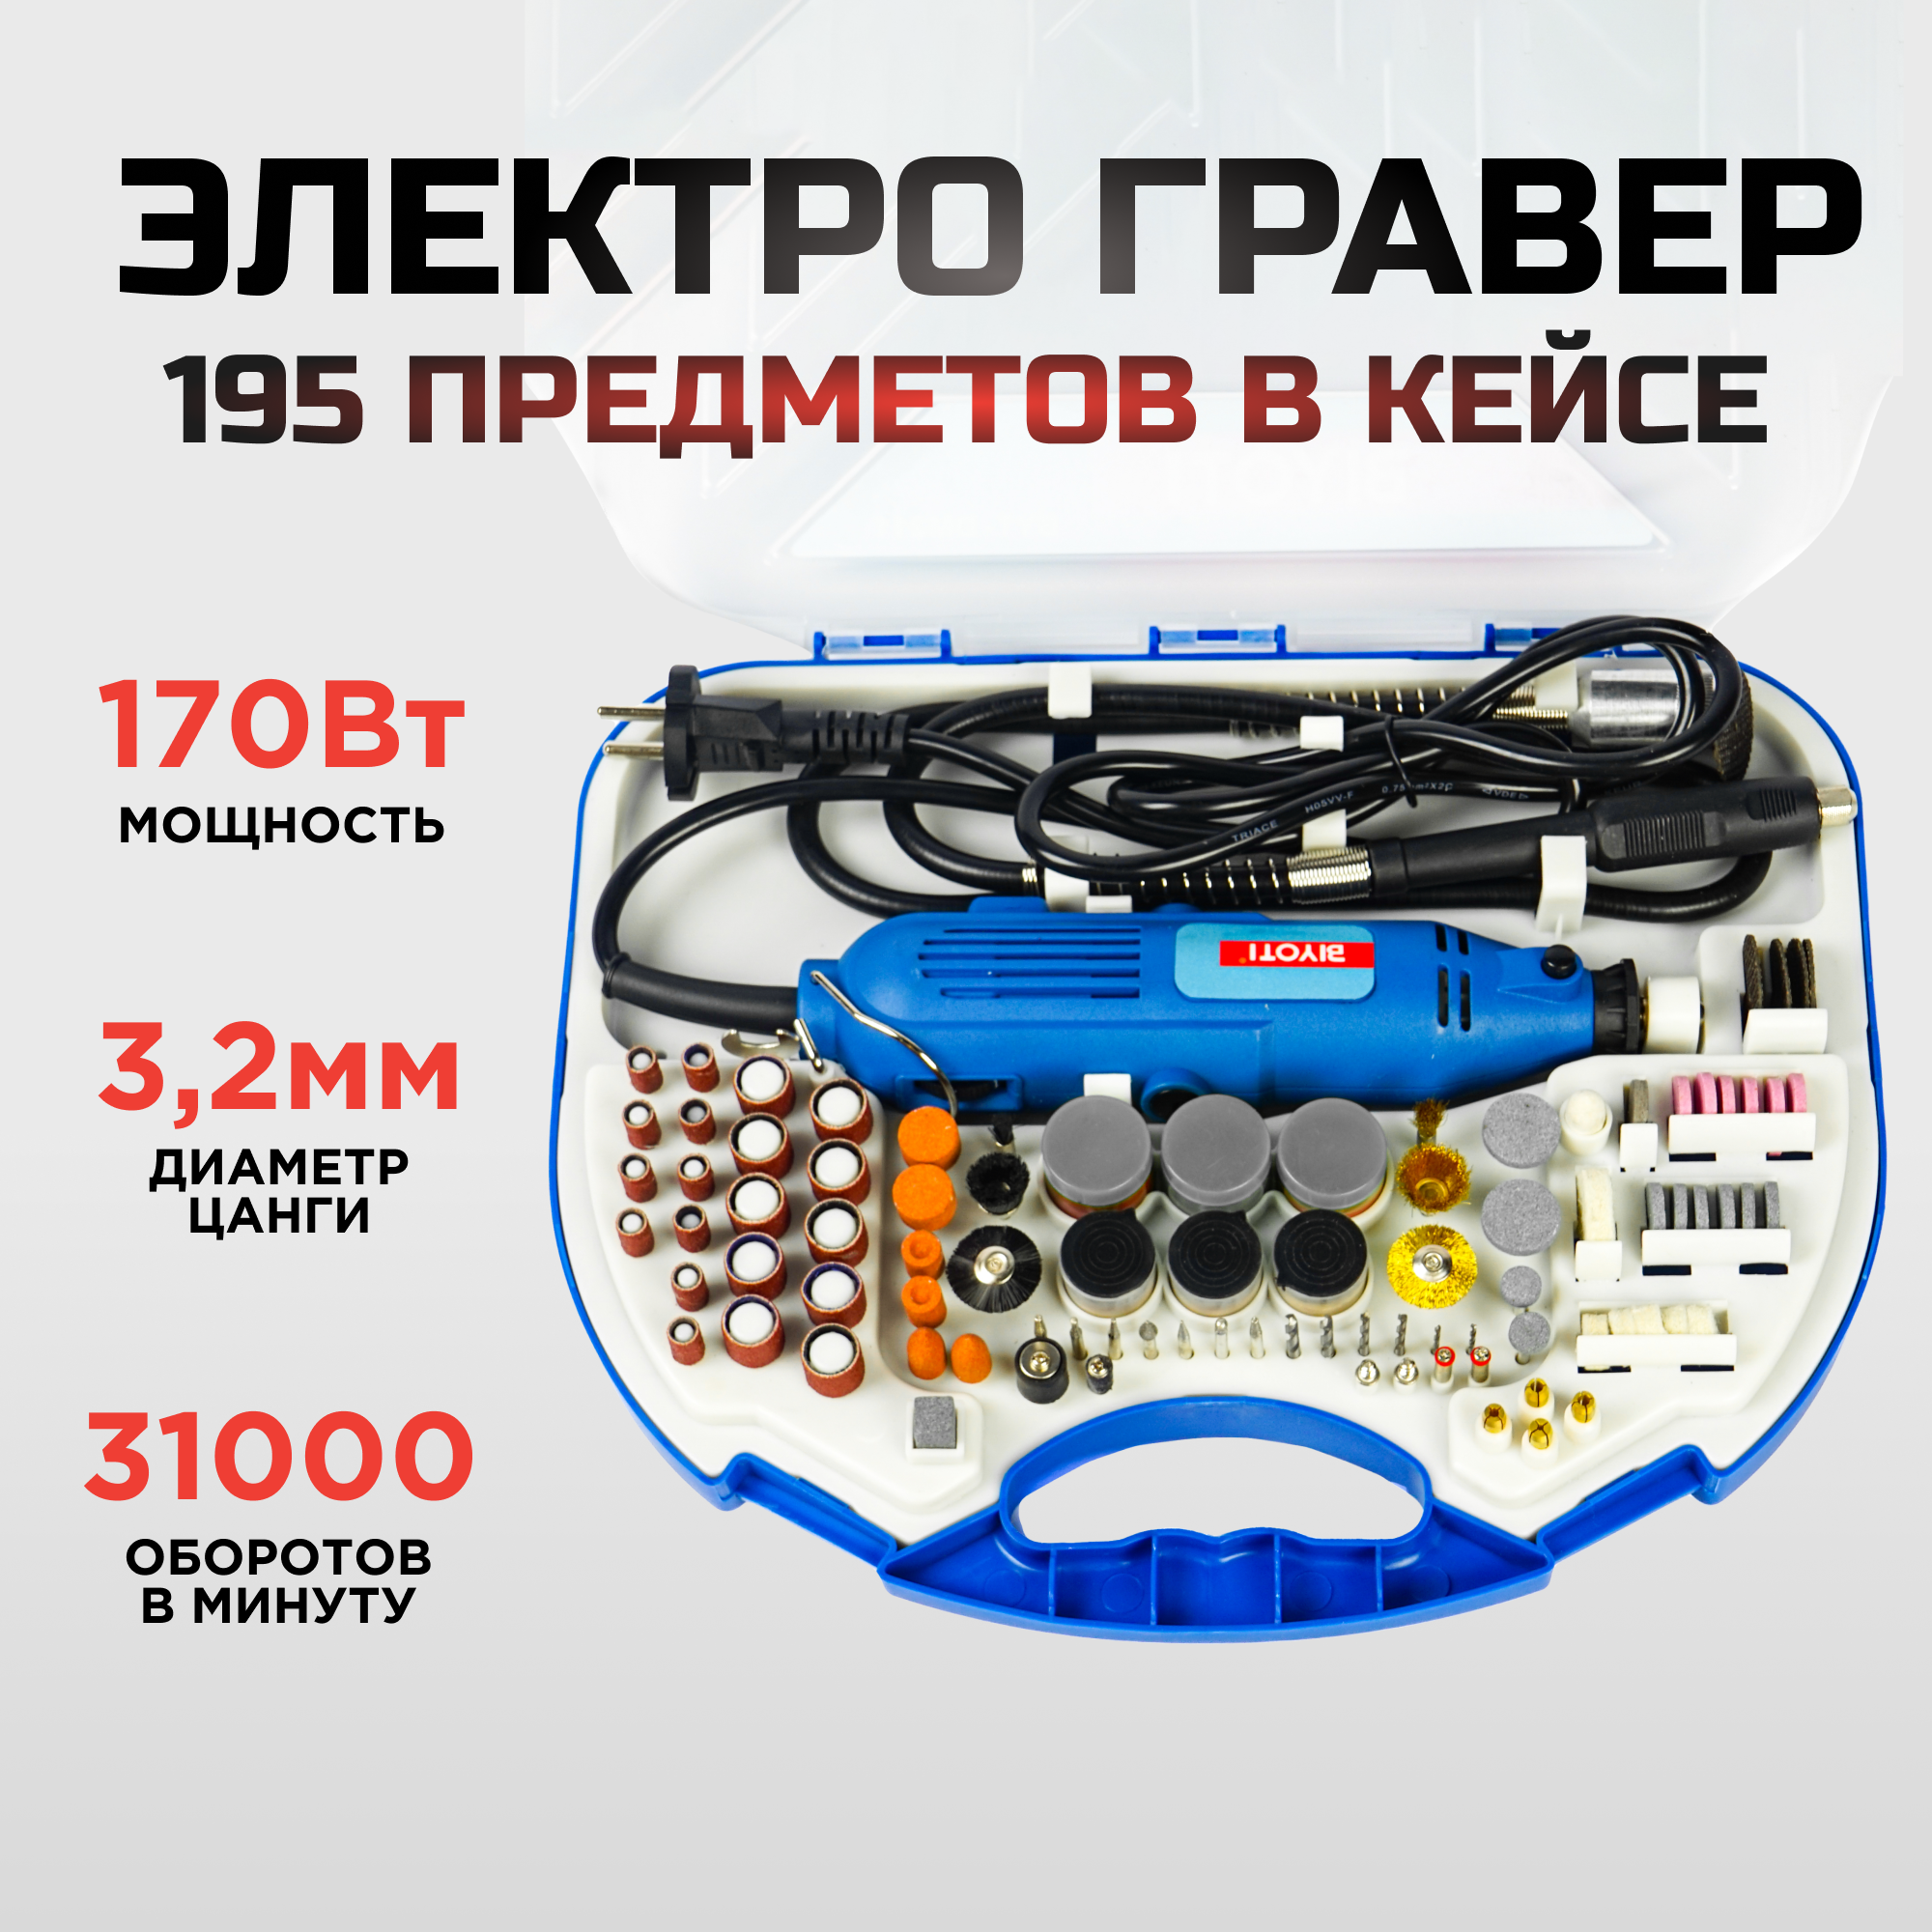 Гравер электрический BIYOTI BYT-DM211 с набором насадок, 195 предметов в кейсе